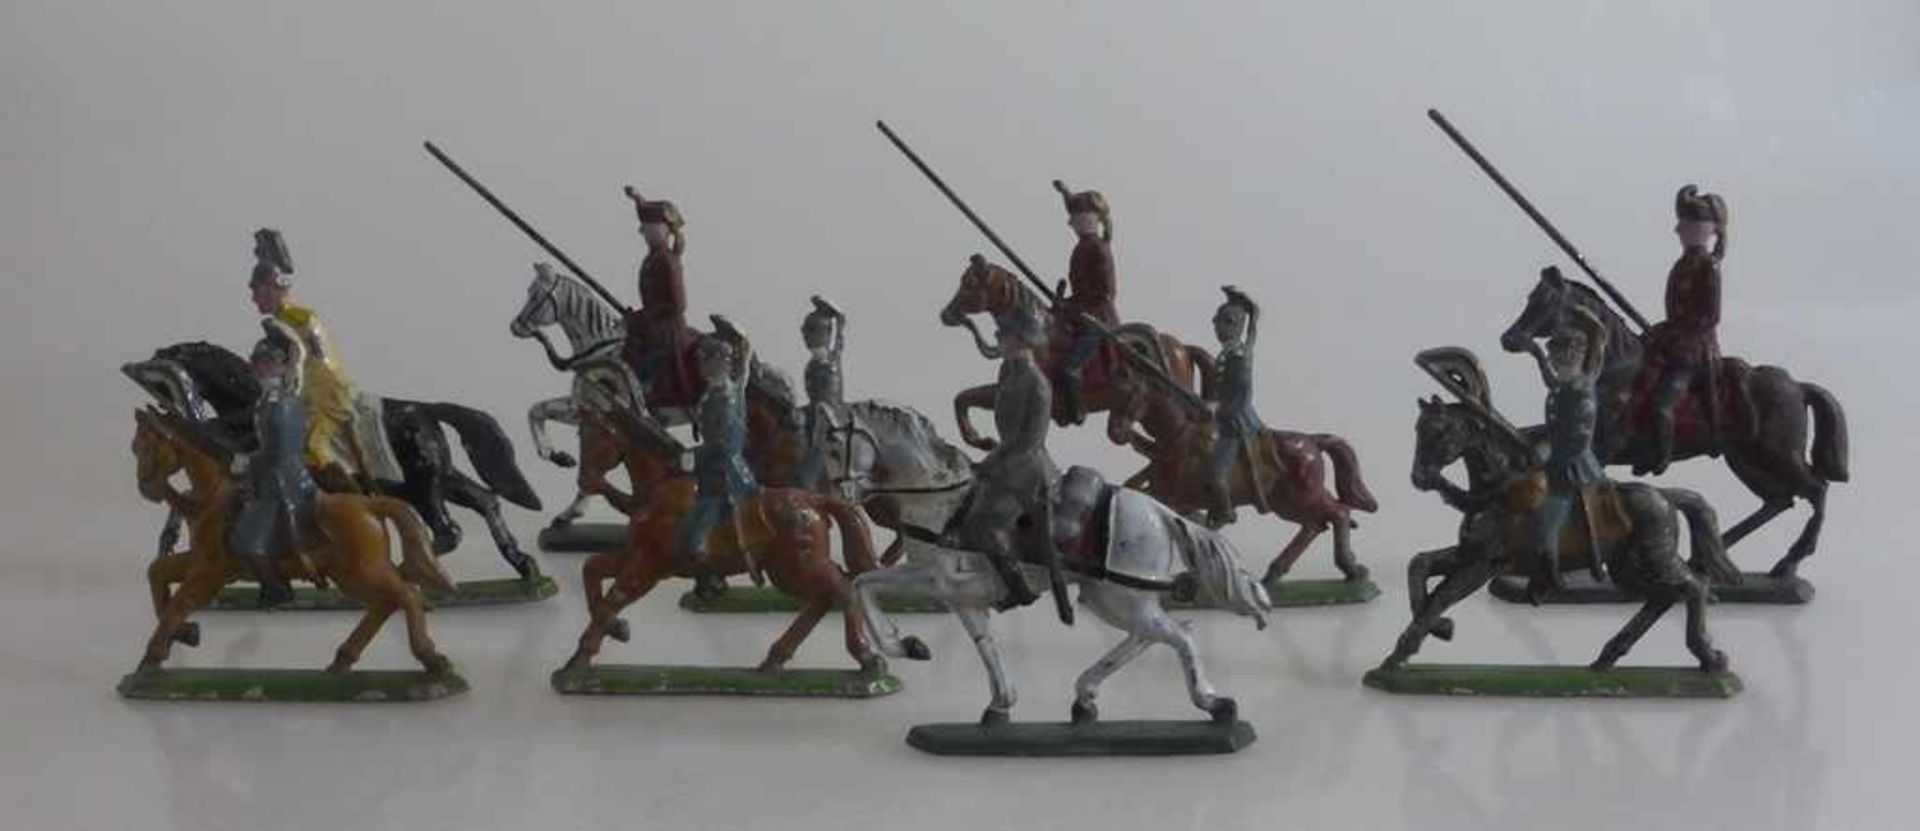 Bleisoldaten um 1920, 13 militärische Reiterfiguren, tlw. besch., h. 6cm - 7,5cm- - -18.00 % buyer's